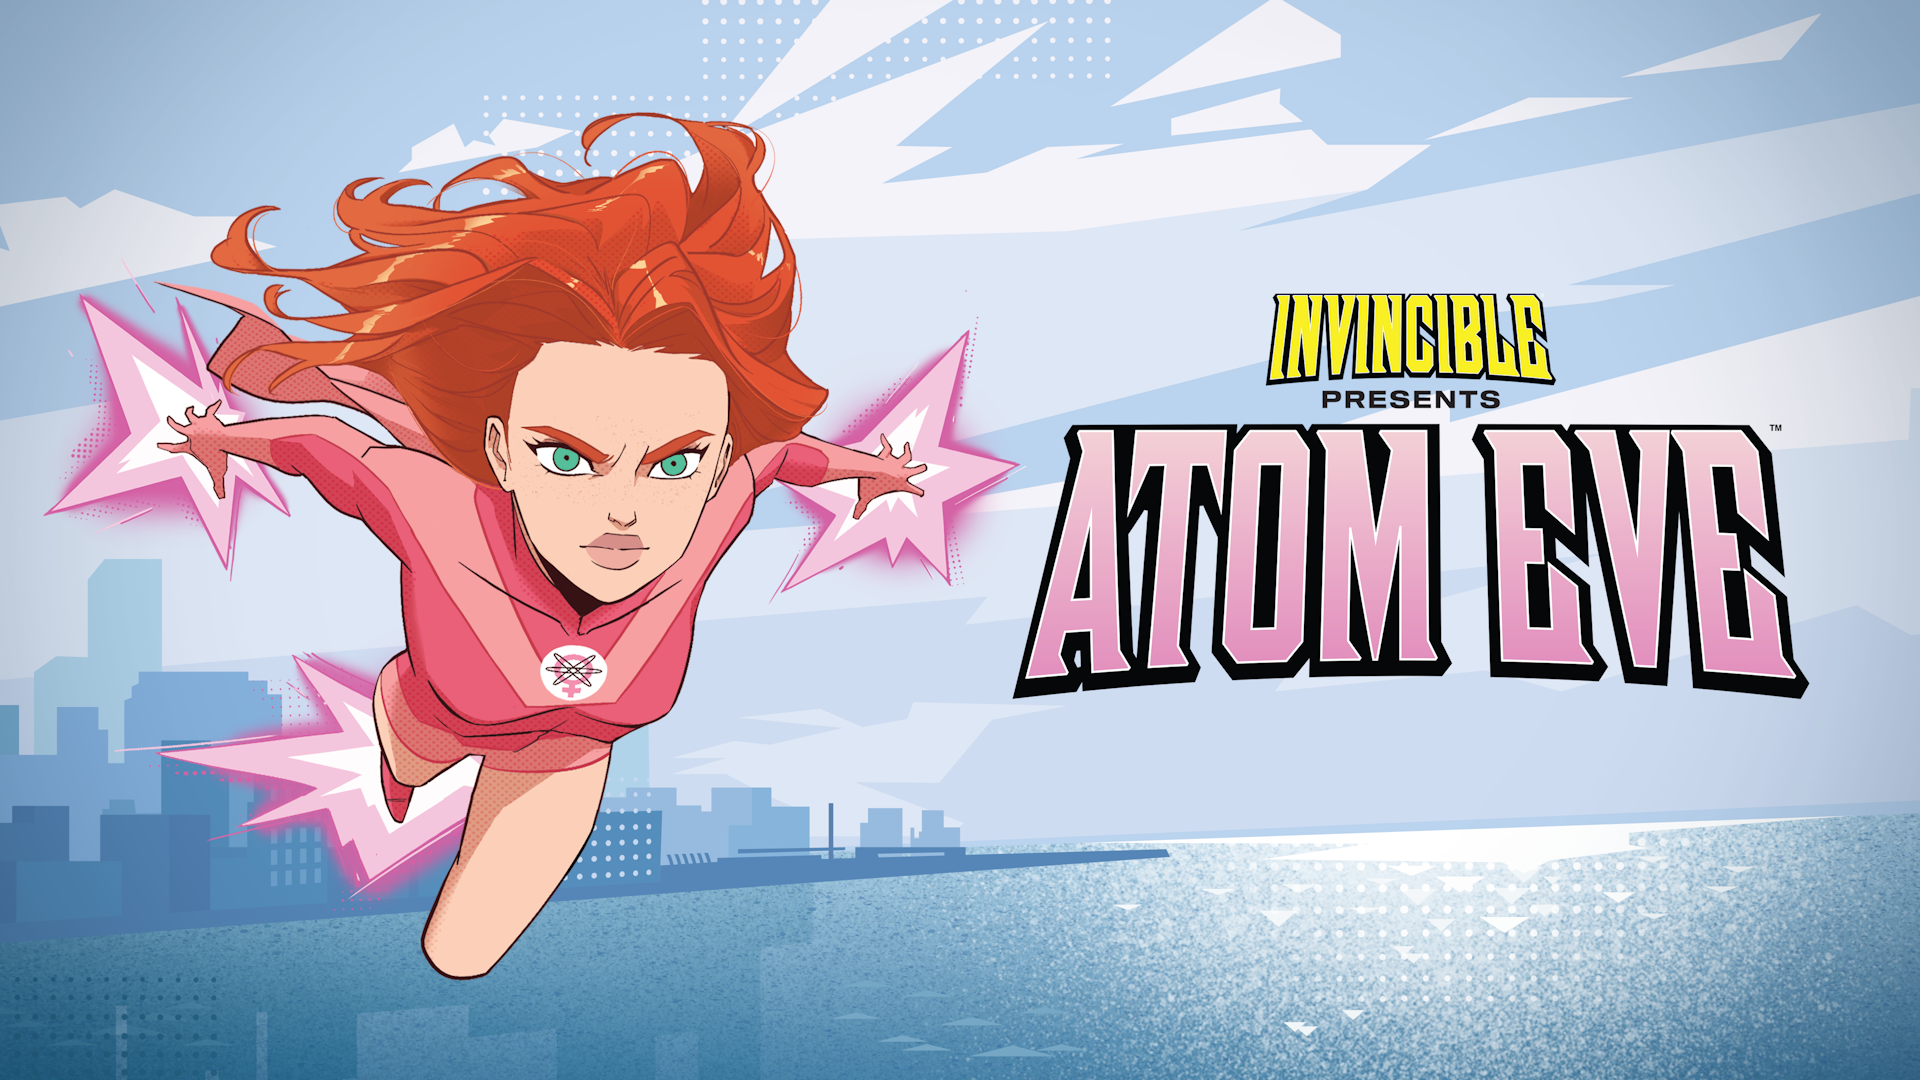 Ключевой арт из видеоигры Invincible Presents: Atom Eve